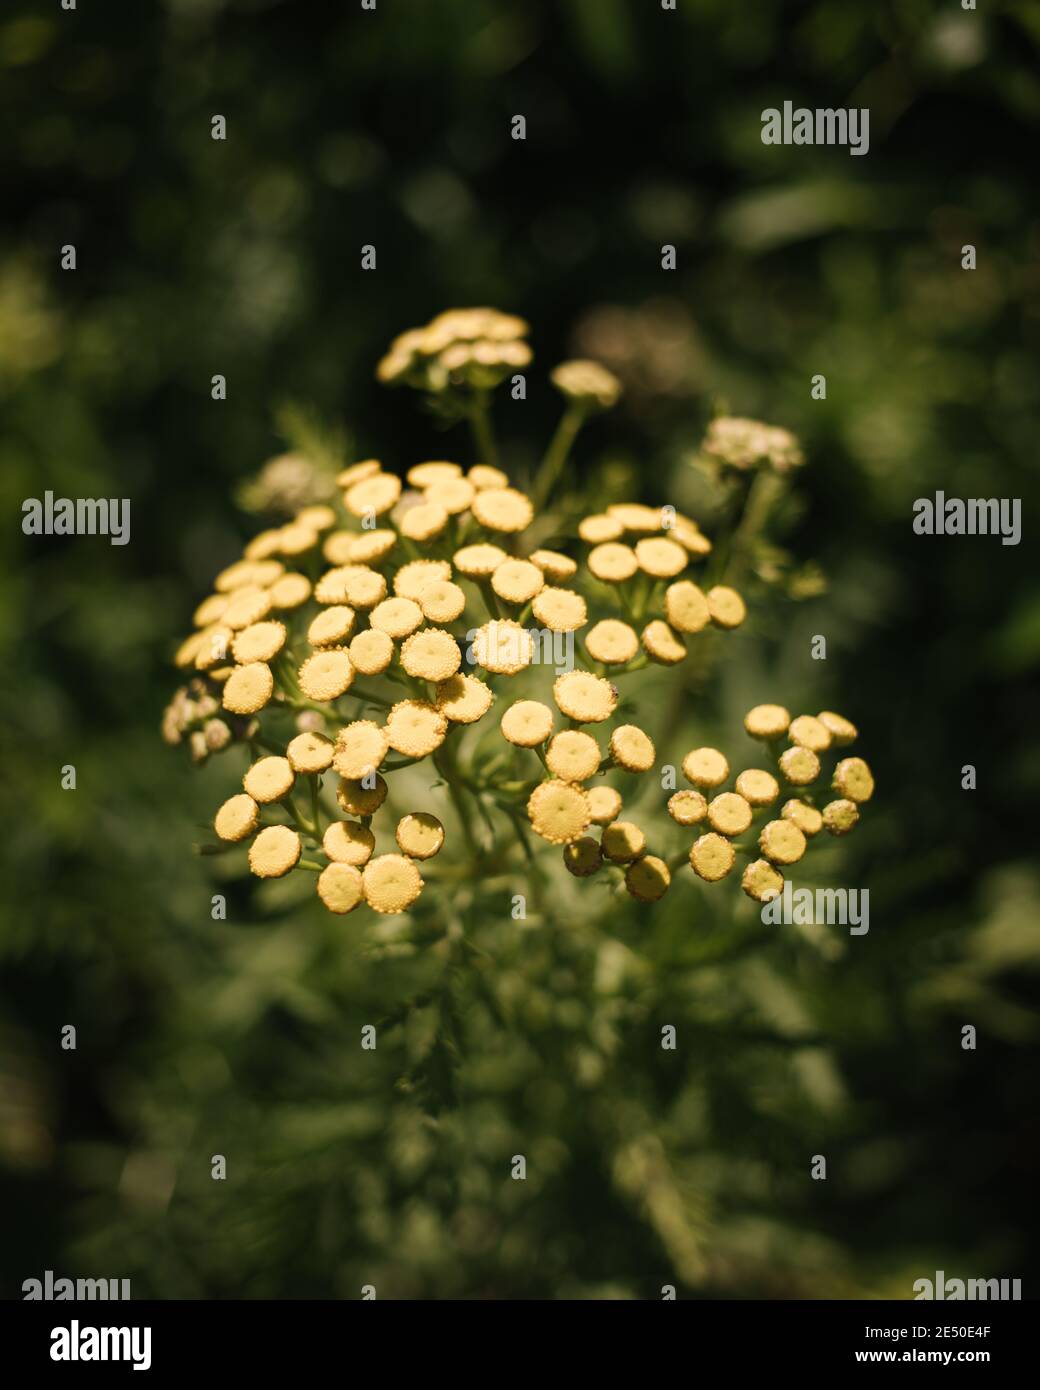 Primo piano di piccoli fiori gialli in erba con profondità di campo poco profonda, Nahant, Massachusetts, Stati Uniti Foto Stock